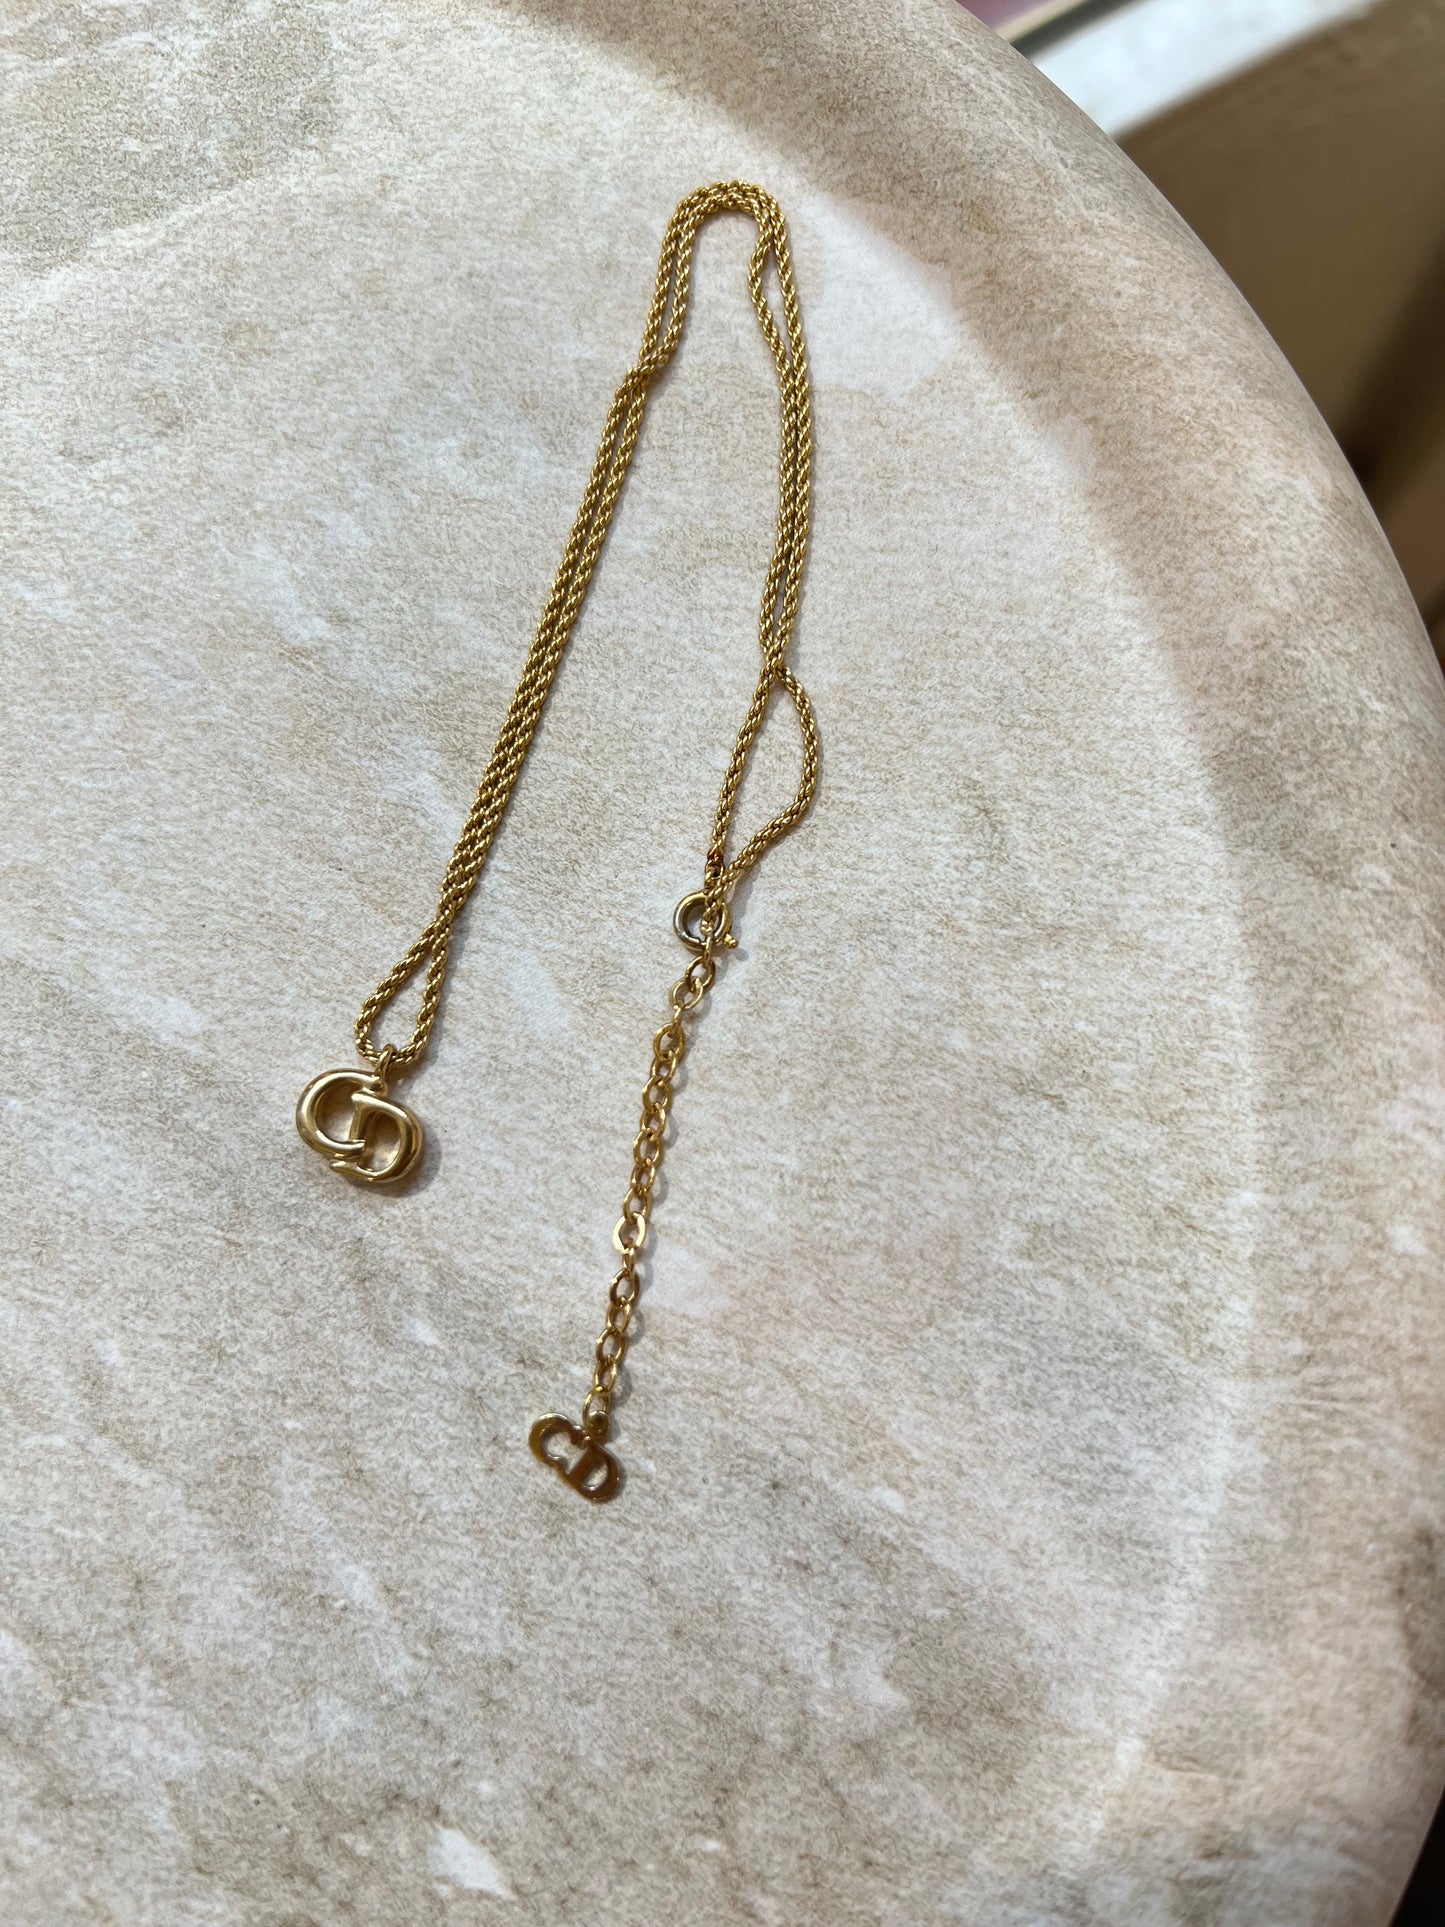 Pre-loved Christian Dior Vintage embellished Necklace